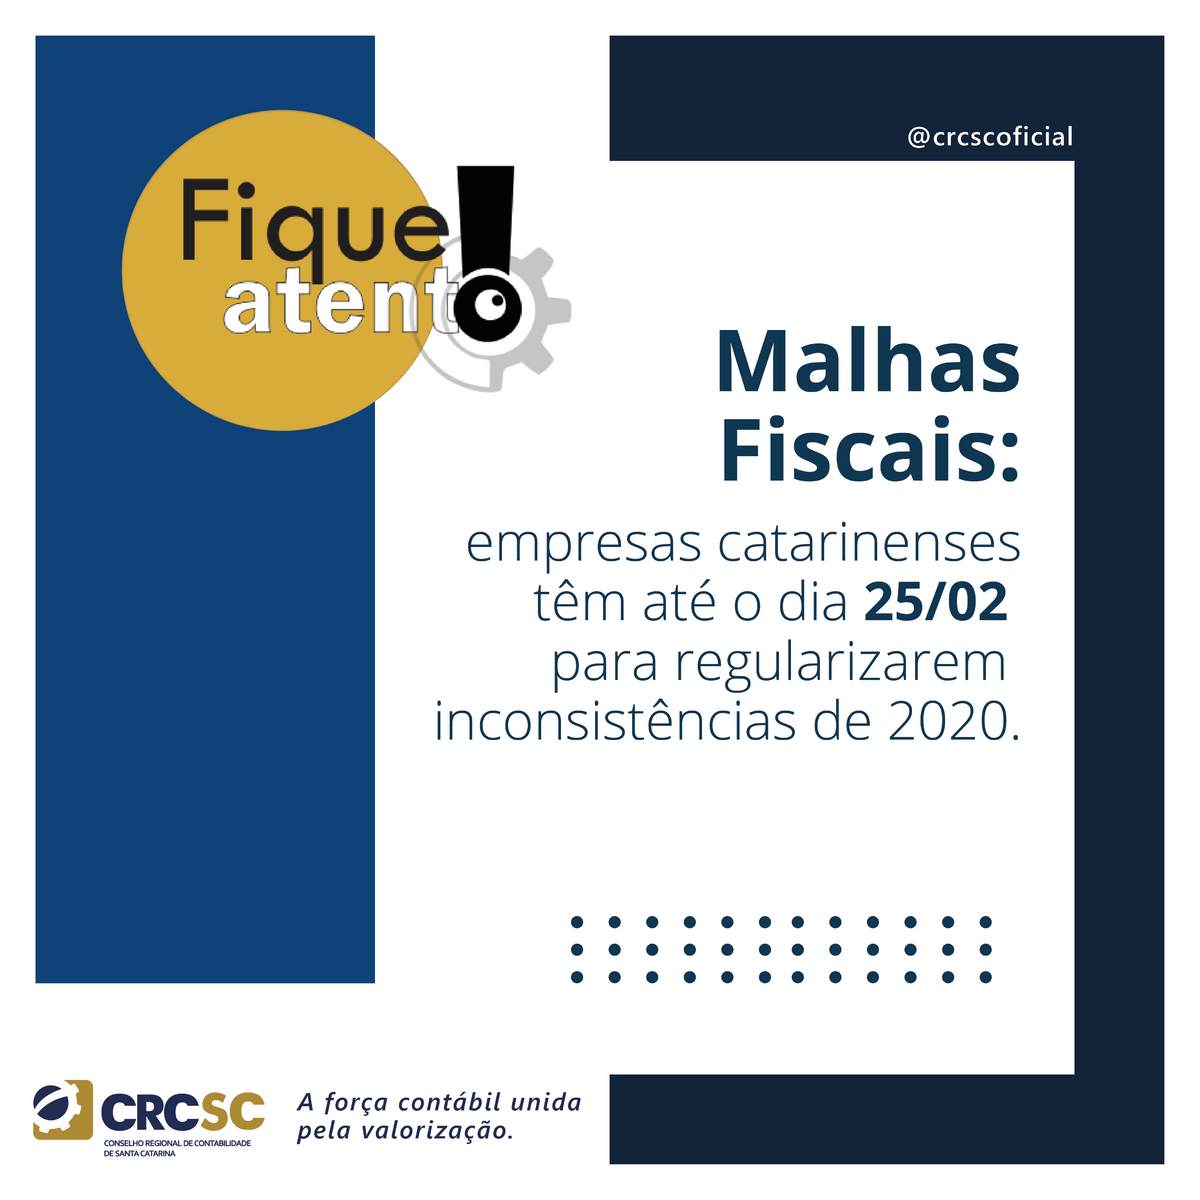 Malhas Fiscais: empresas catarinenses têm até o dia 25/02 para regularizarem inconsistências de 2020